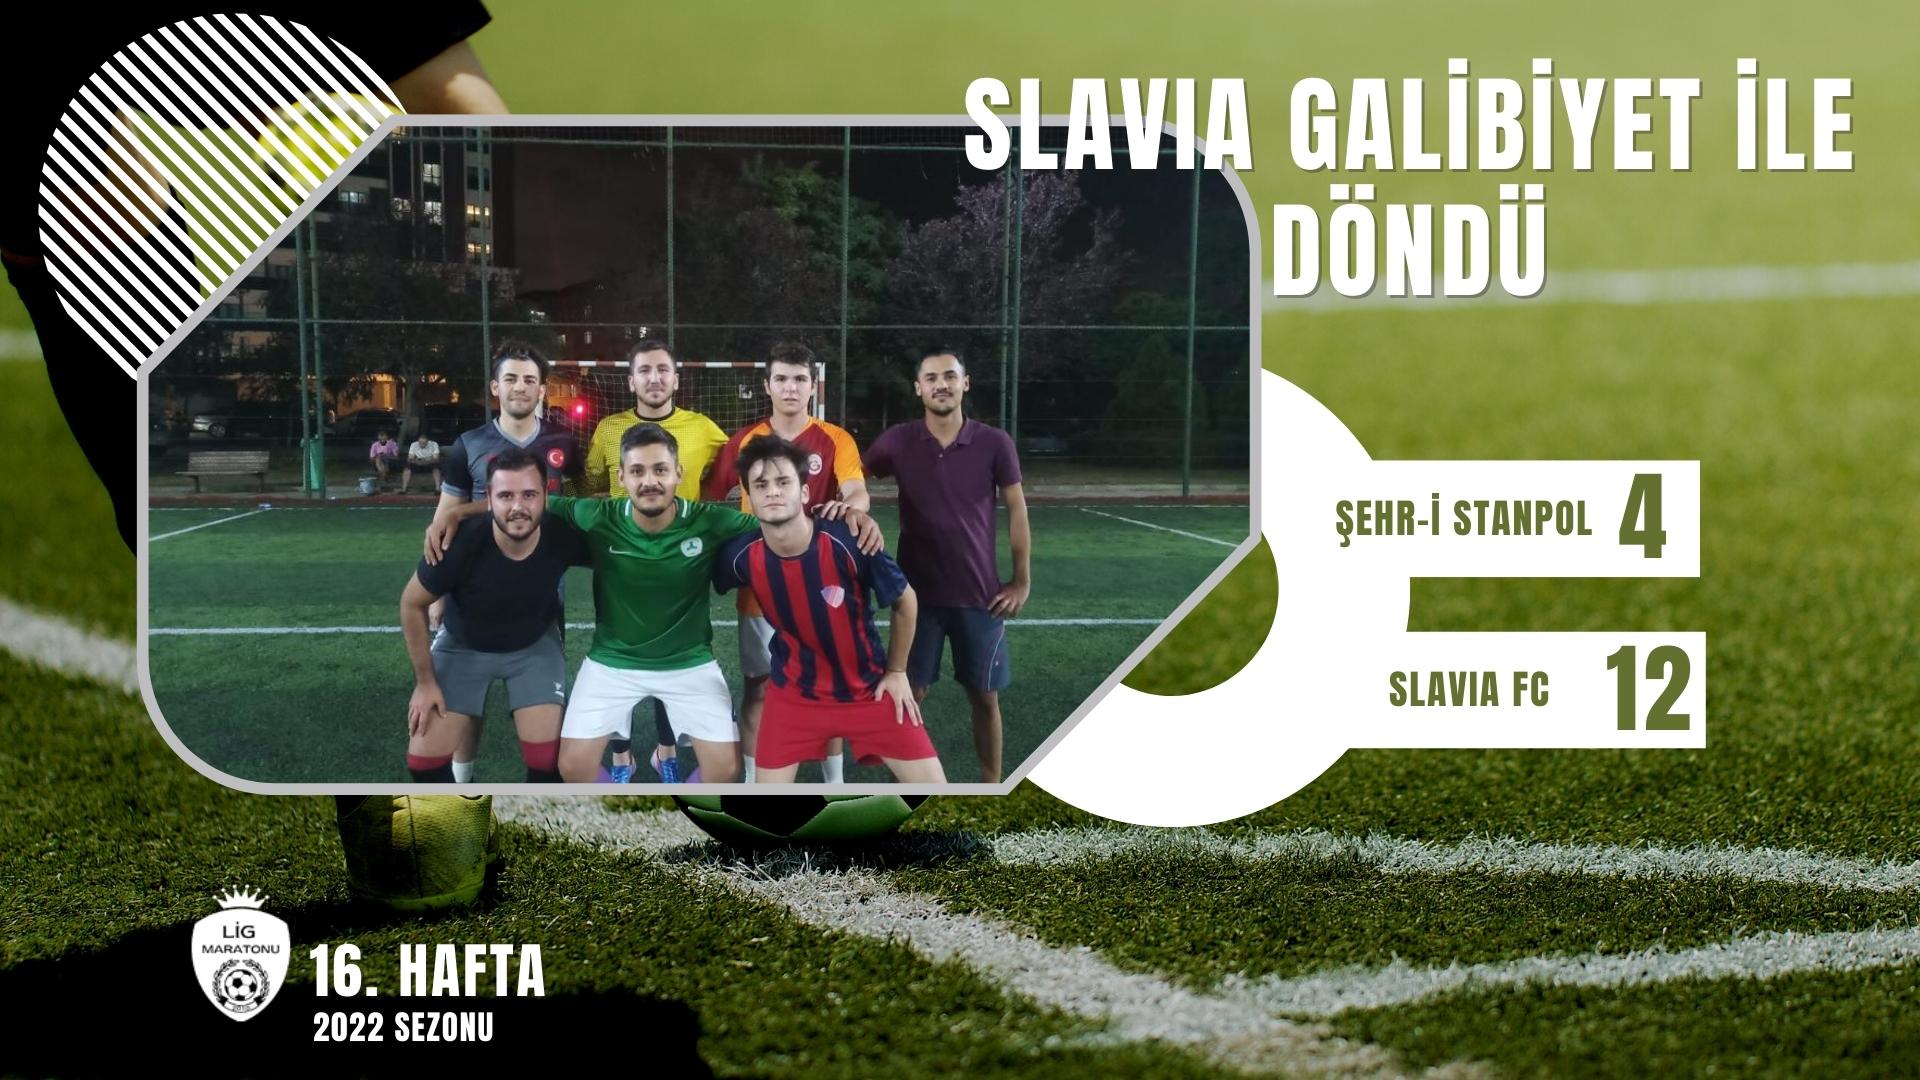 SLAVIA FC GOLLERİ ÜÇLE ÇARPTI